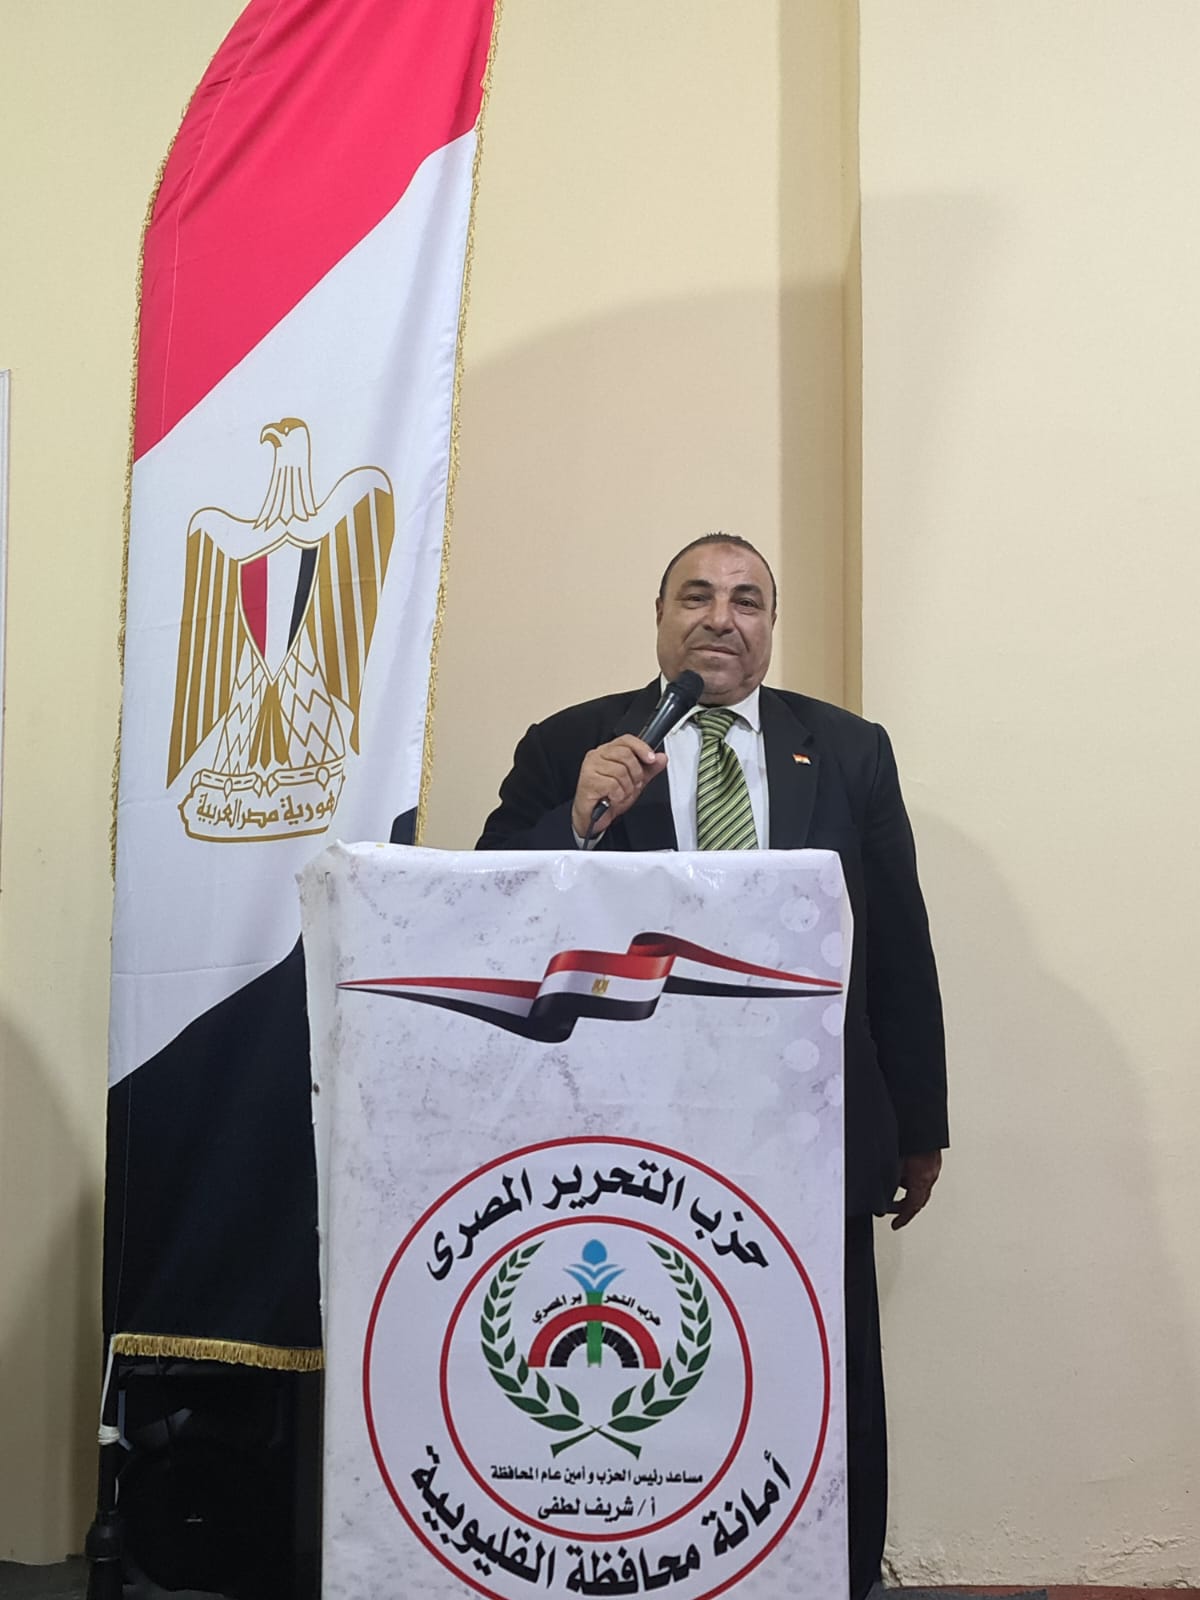 أمانة حزب التحرير المصري بالقليوبية